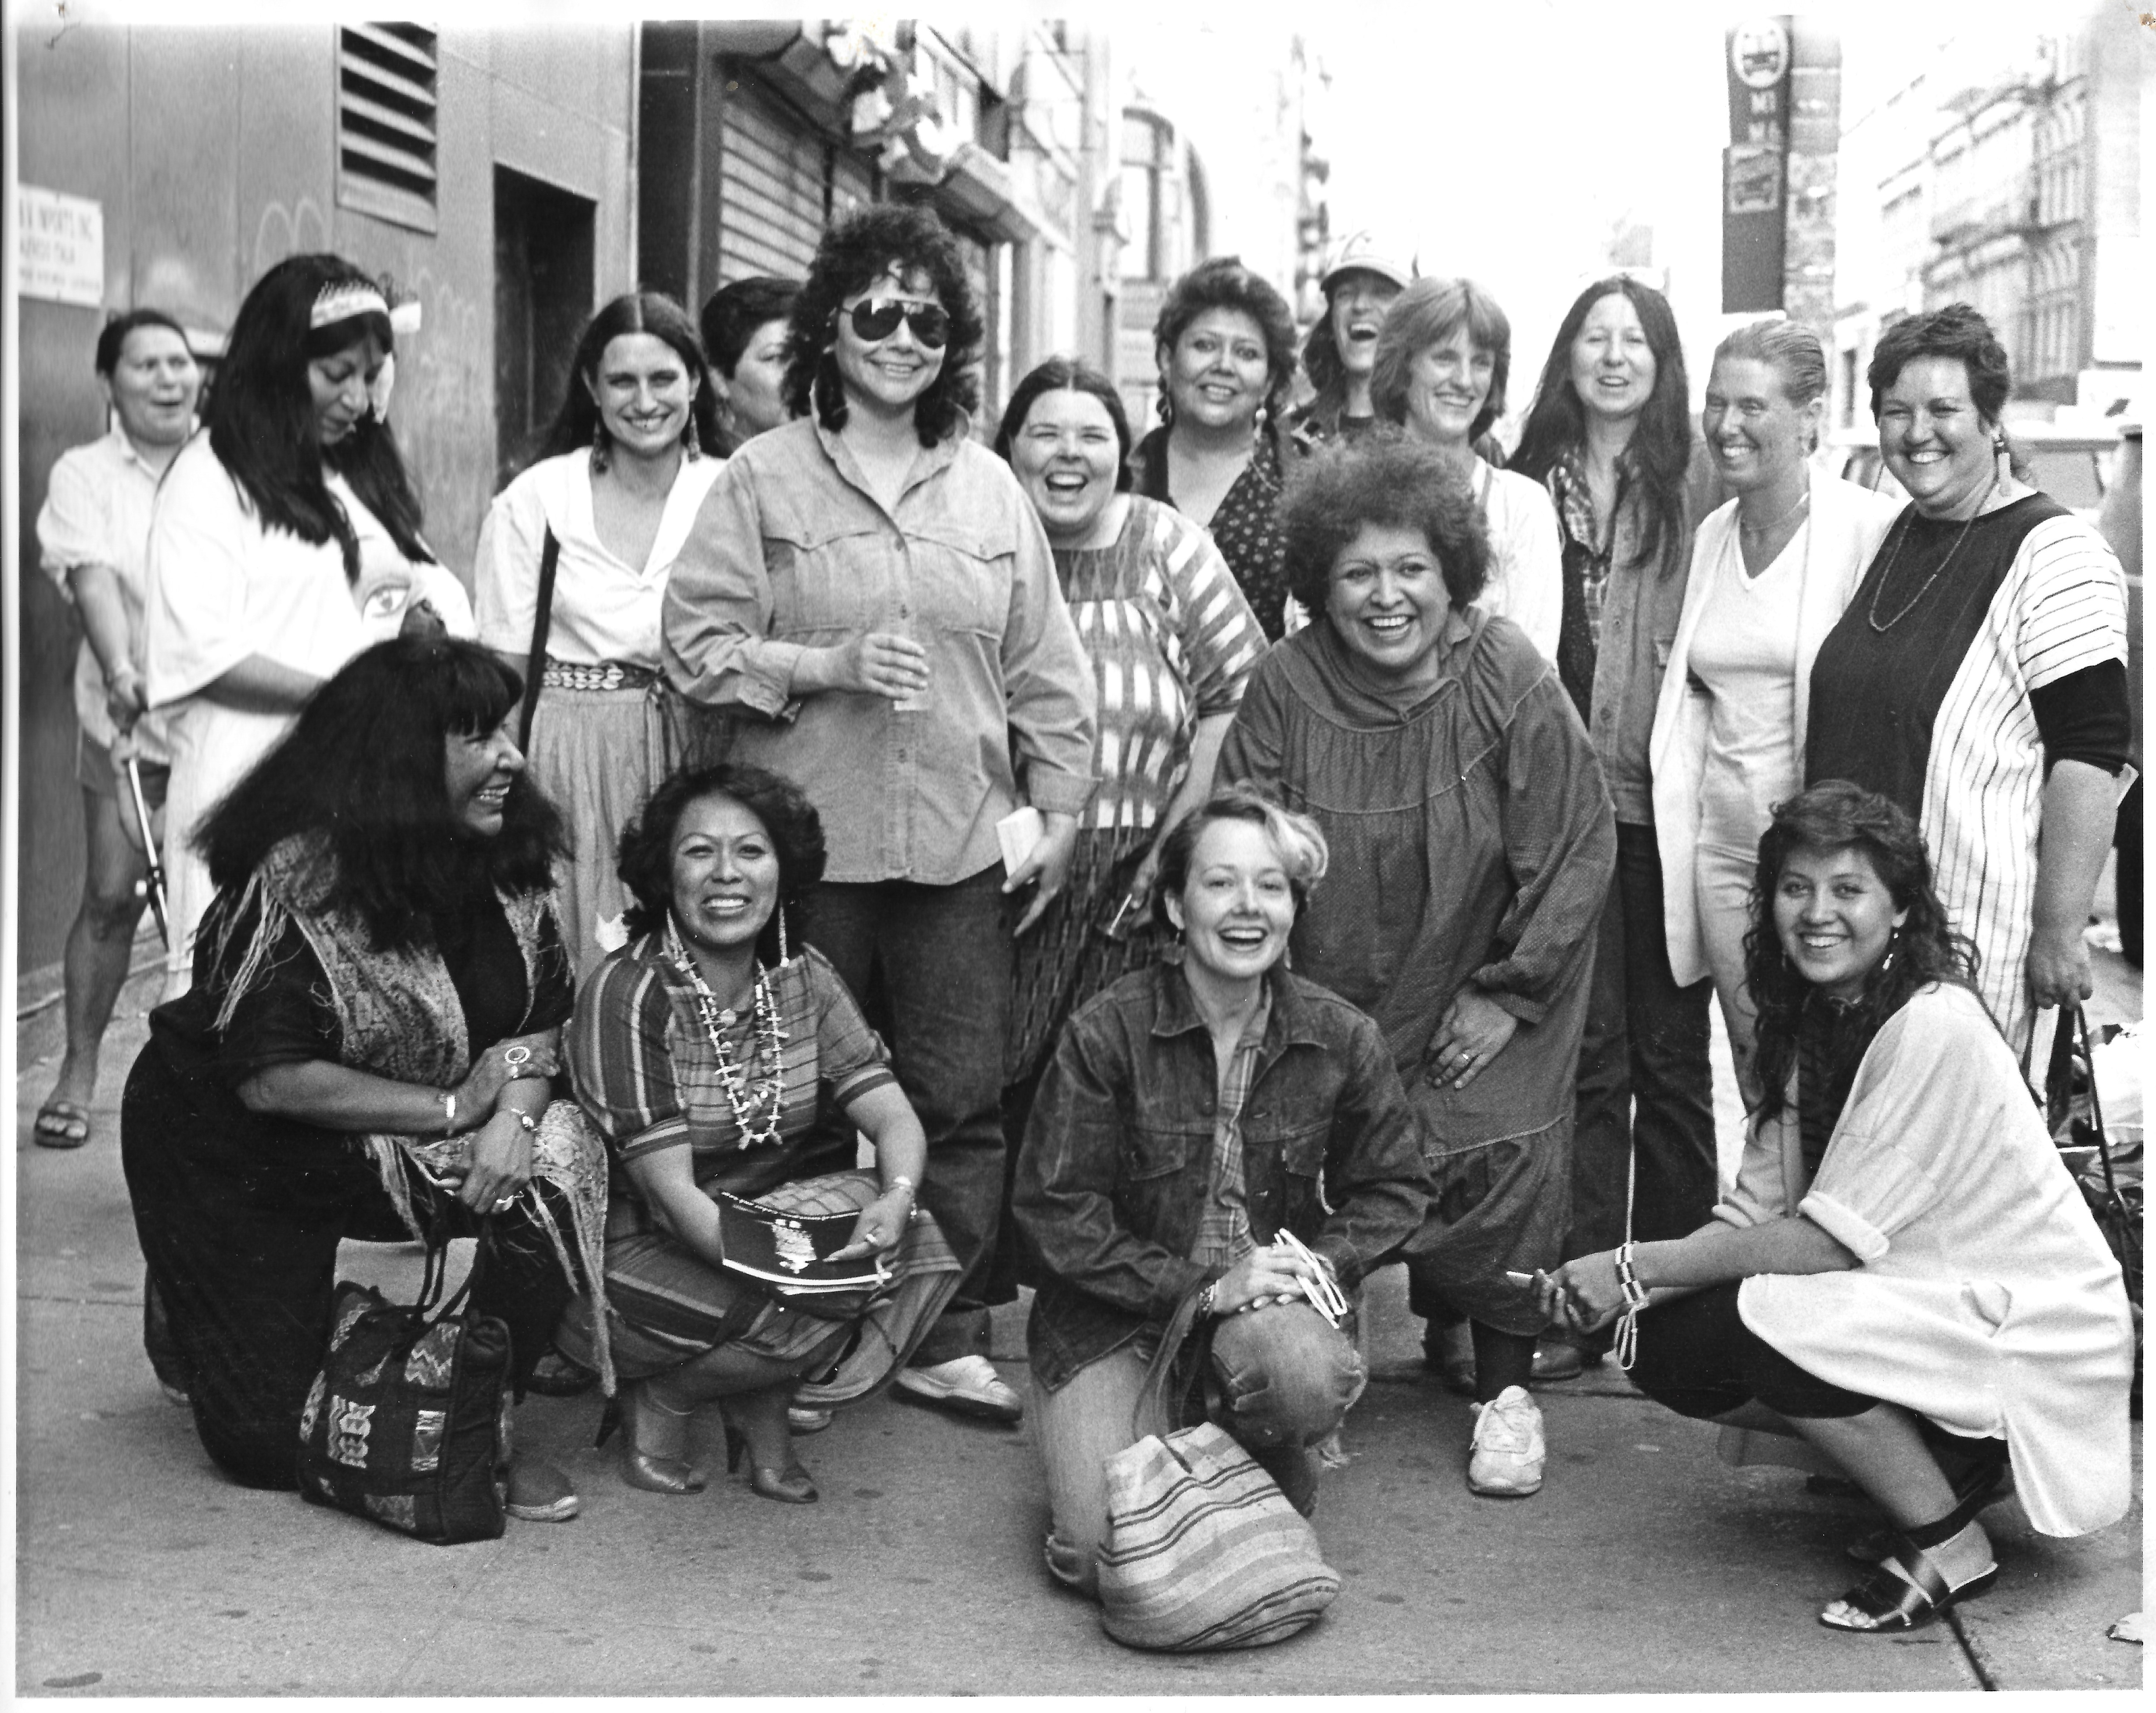 1) 1985 년 아메리칸 인디언 커뮤니티 하우스 갤러리 외부의 스위트 그래스 여성, 시더 앤 세이지 여성, 친구 및 커뮤니티 회원의 전시회 아티스트